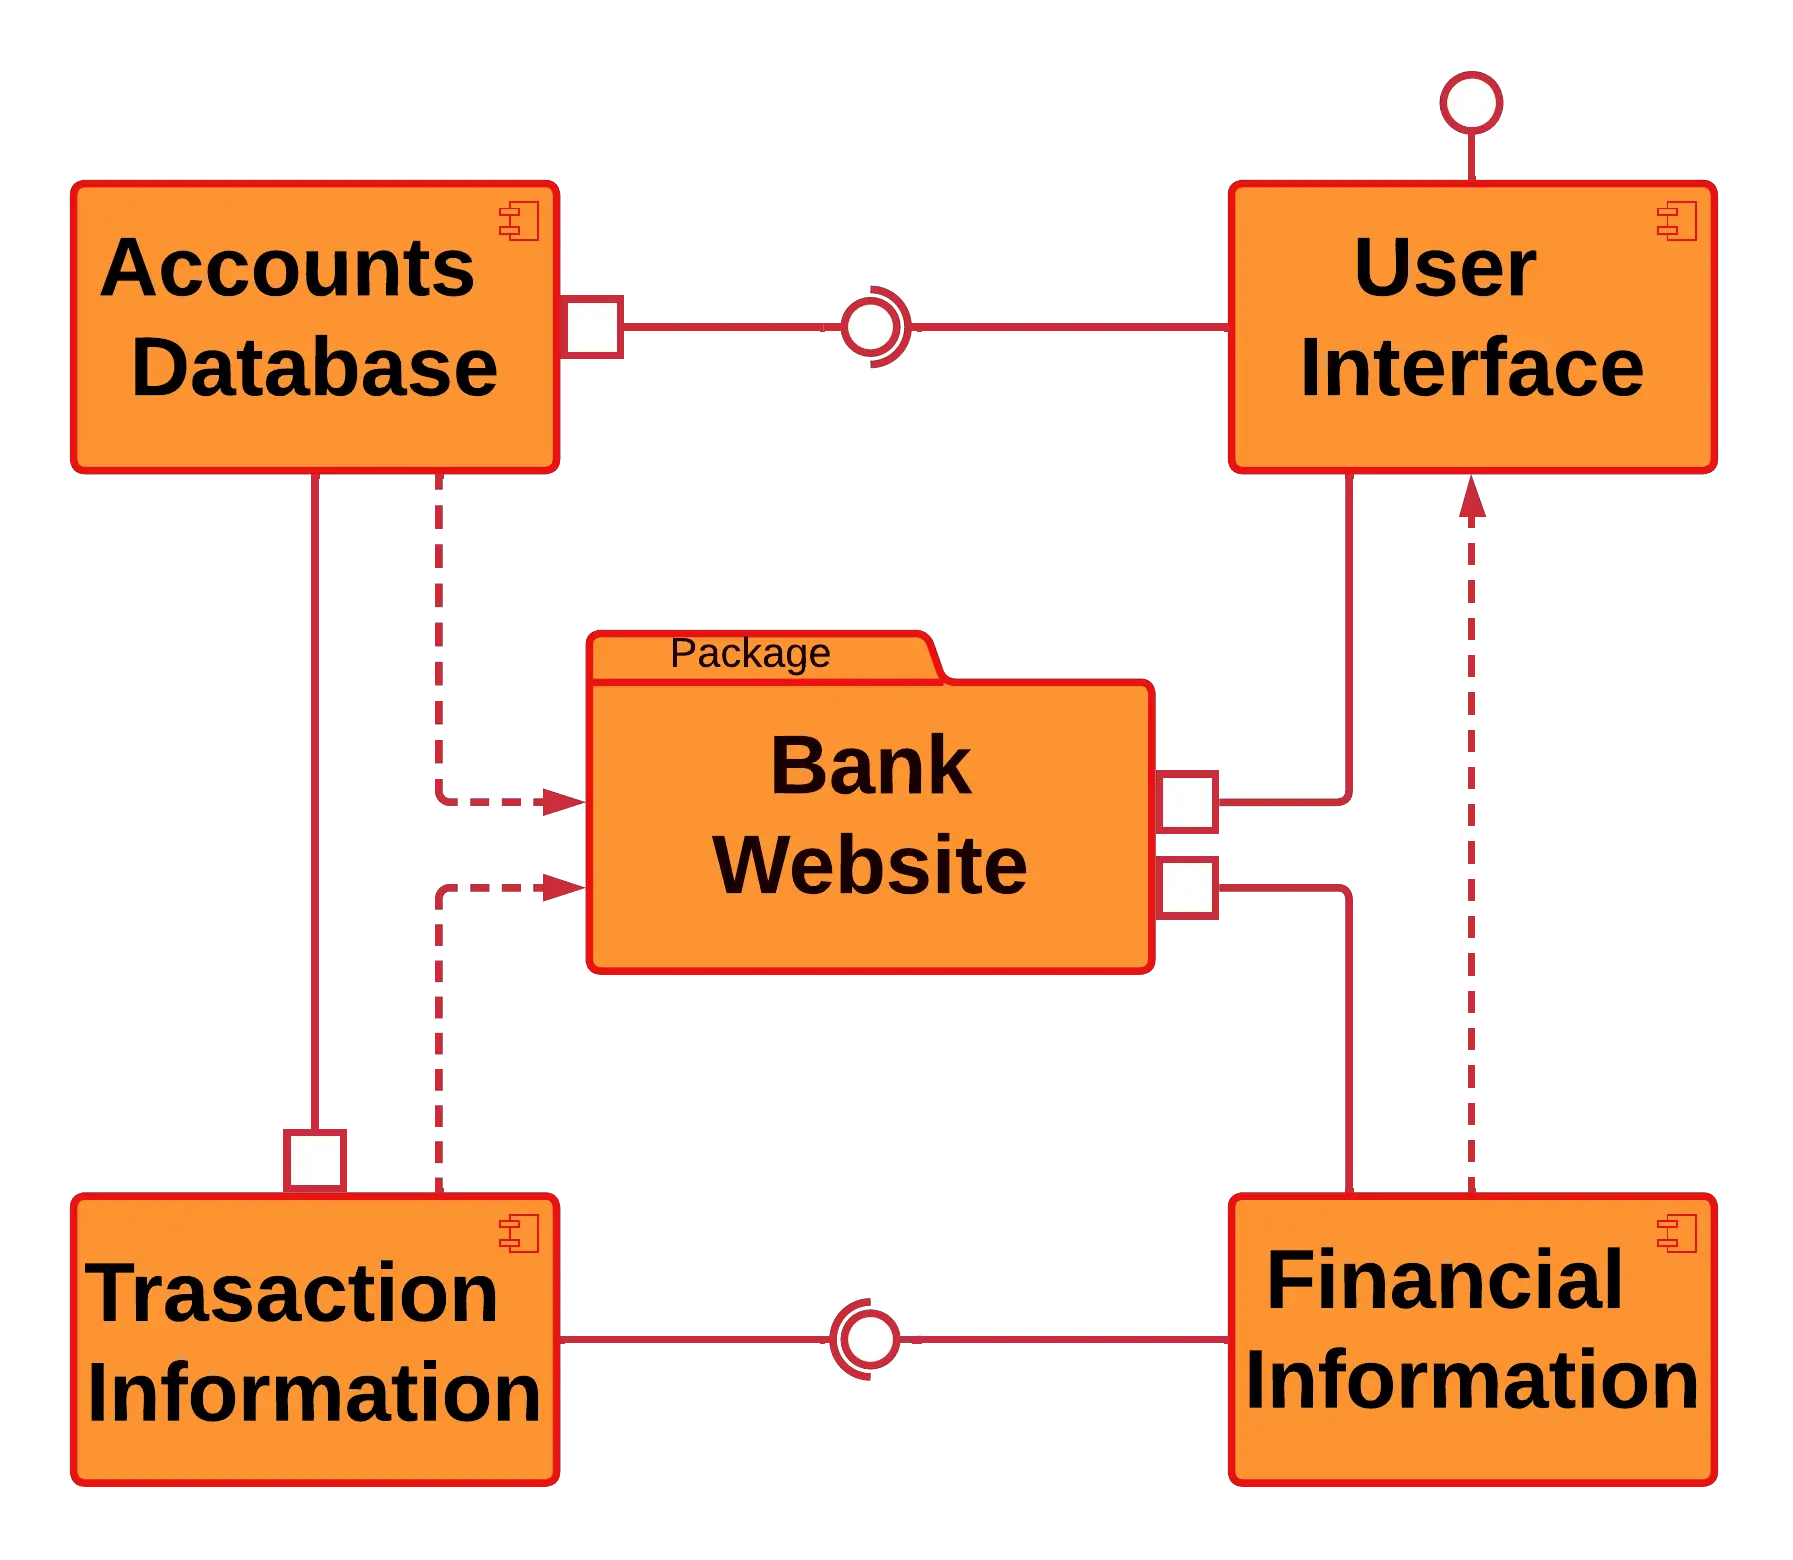 Component Diagram For Bank Management System Uml